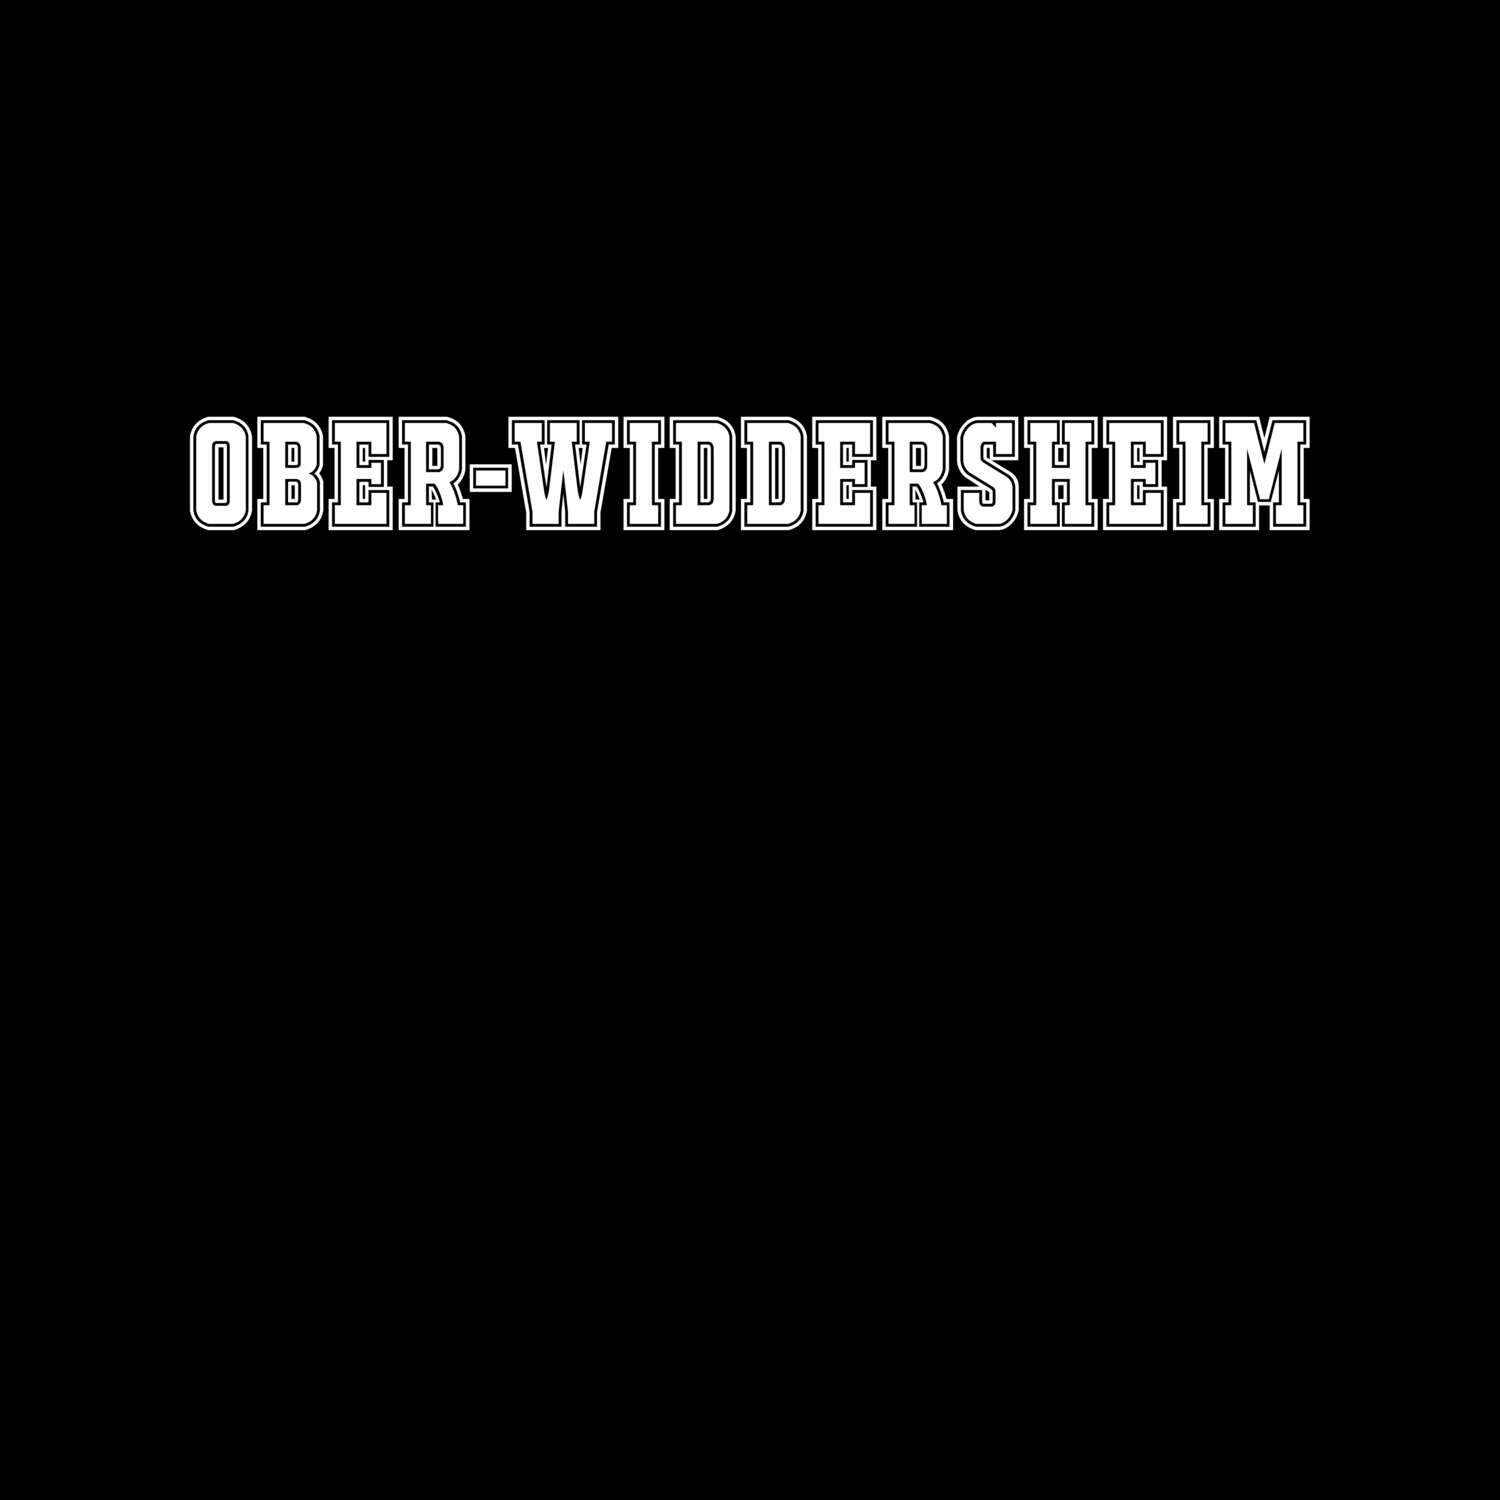 Ober-Widdersheim T-Shirt »Classic«